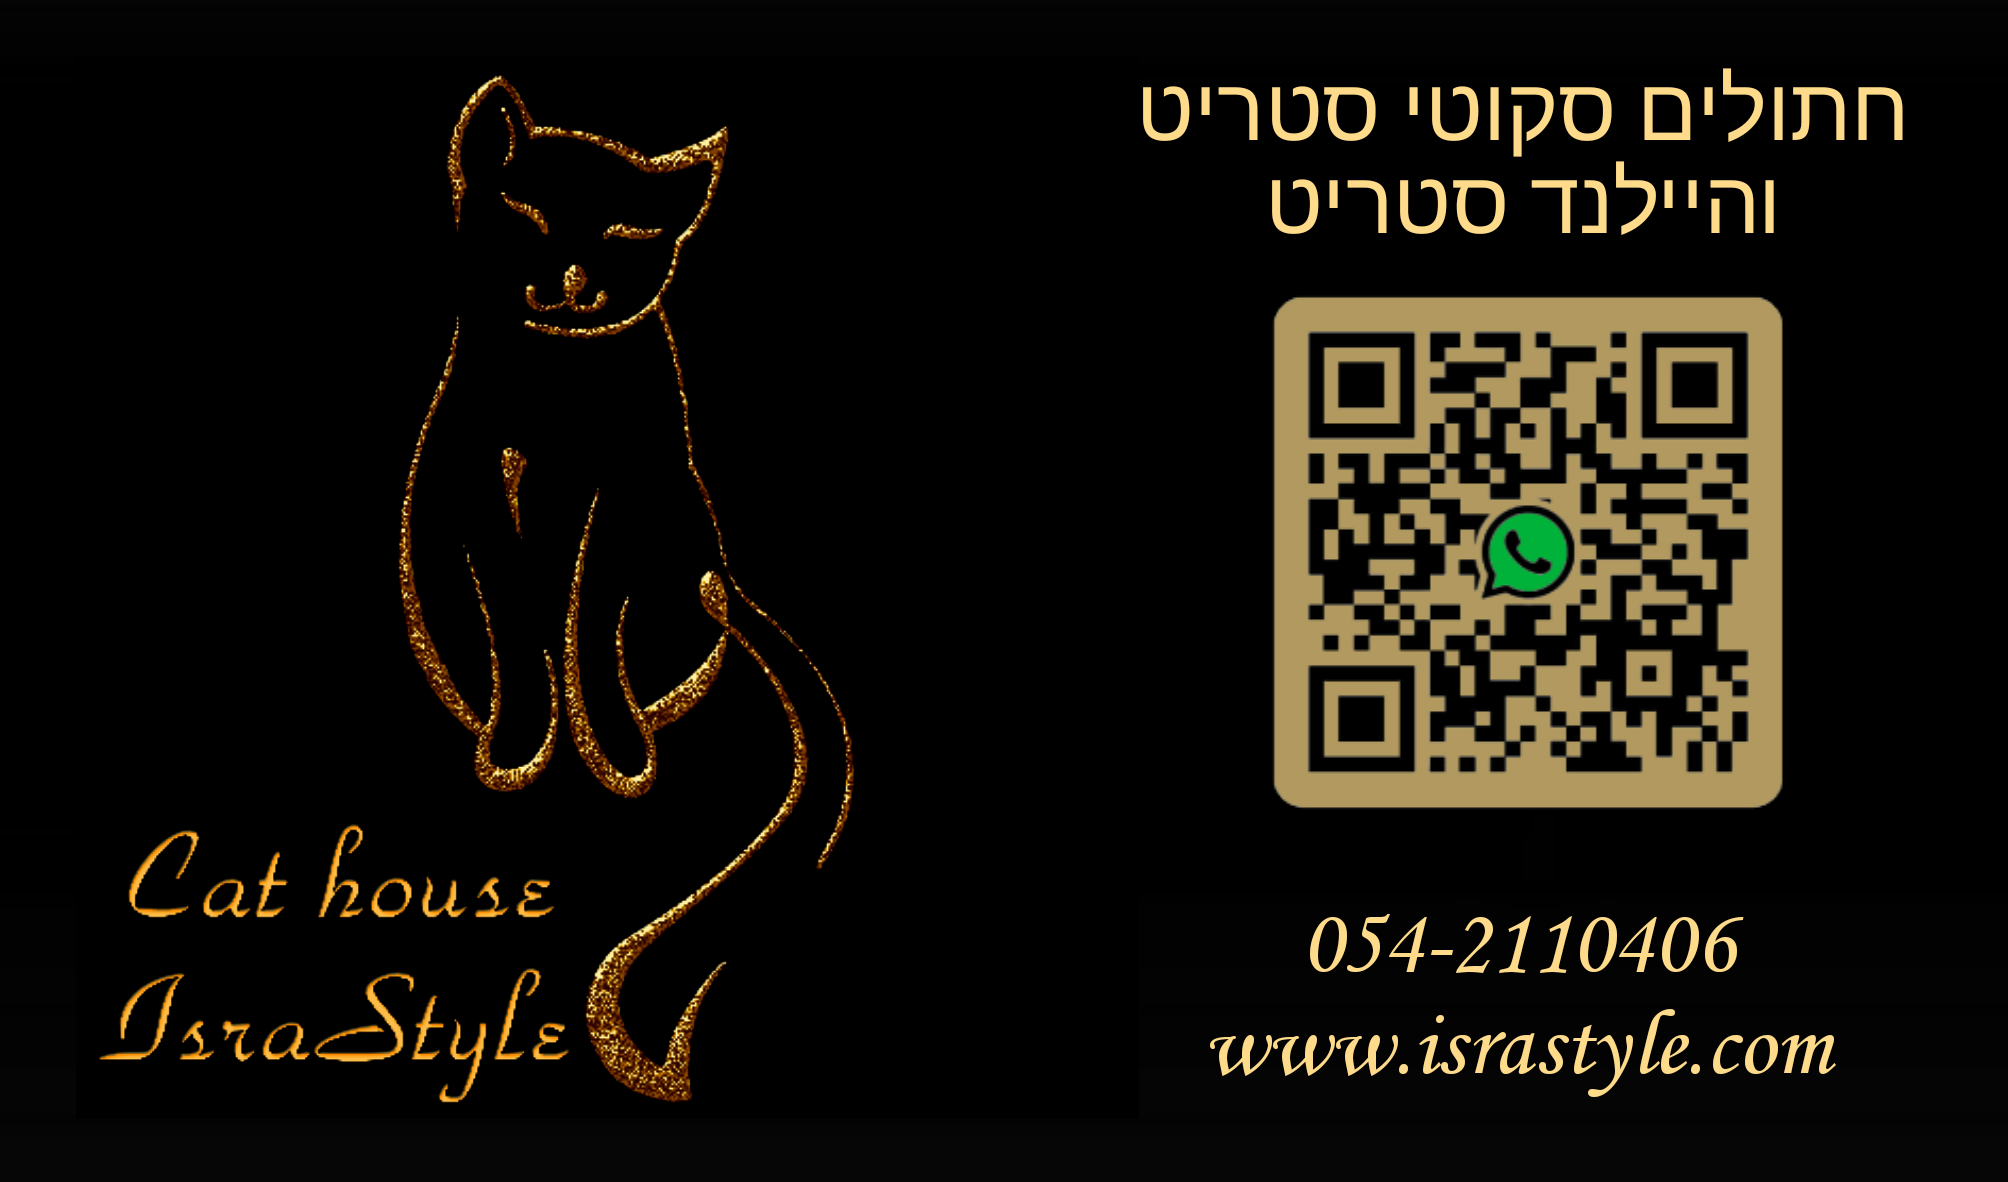 Cat house IsraStyle - Калькулятор беременности - расчет даты родов кошек